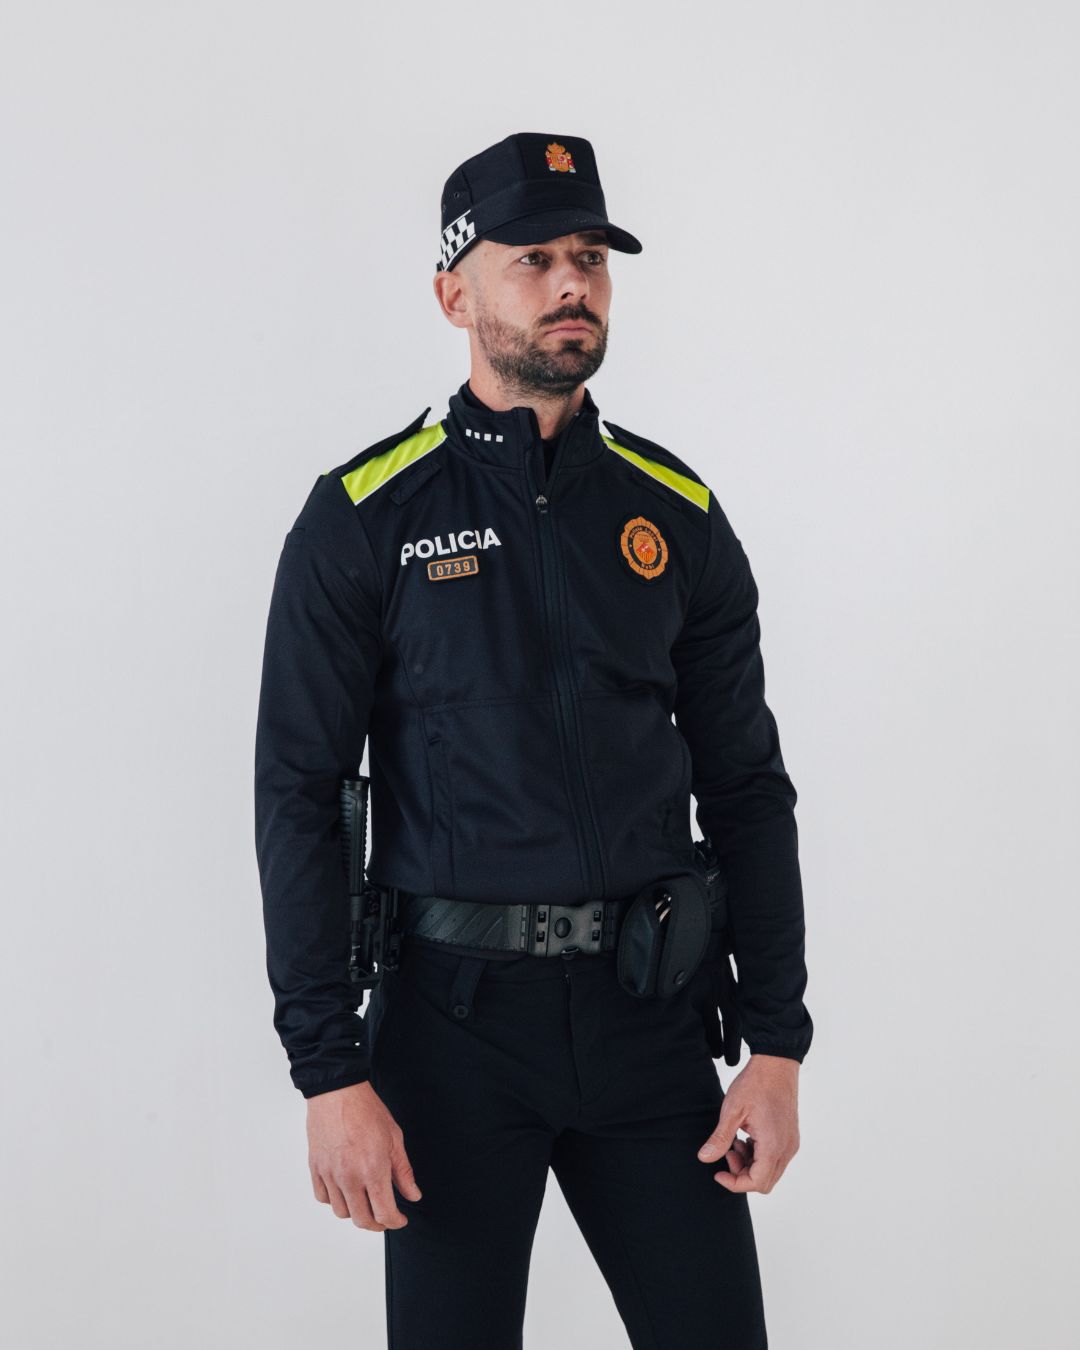 uniformidad policial Hombre